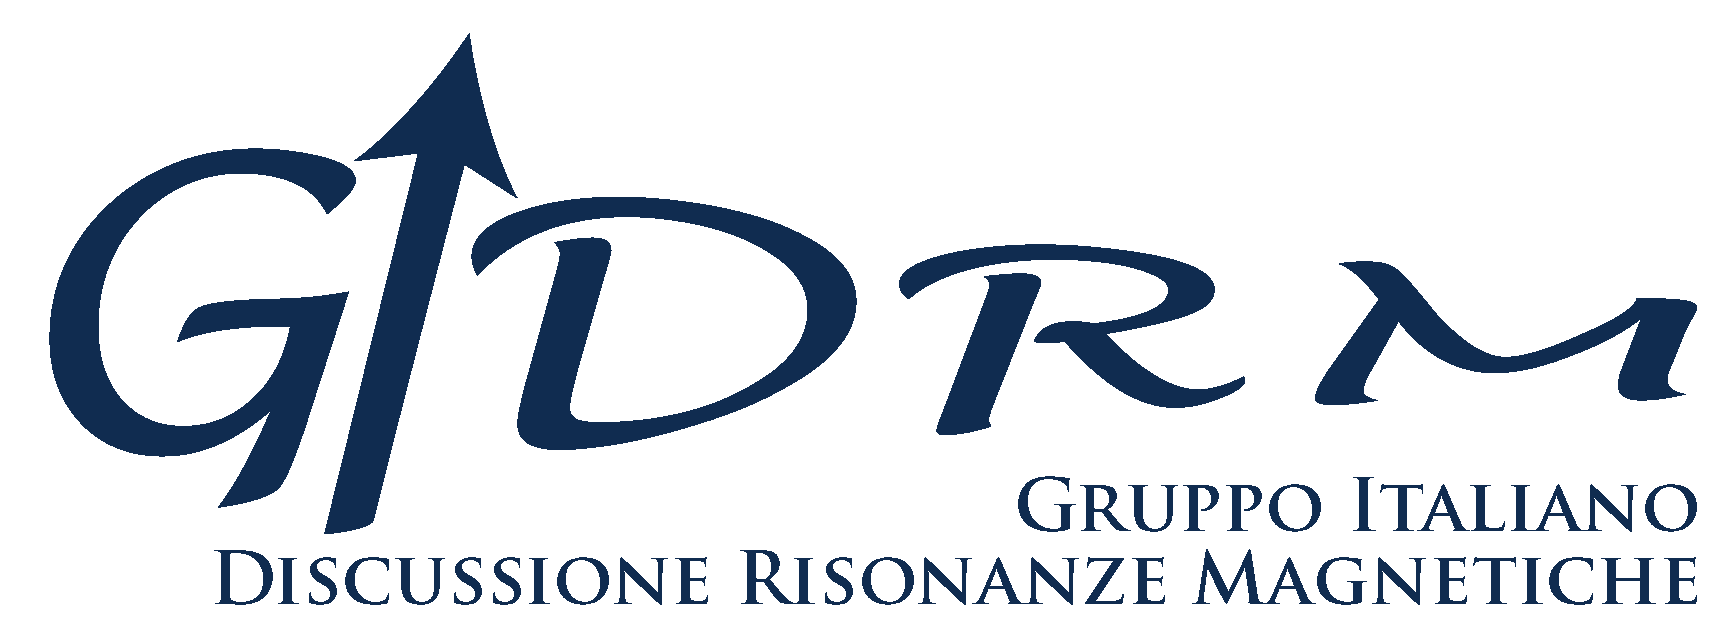 New Logo GIDRM v4 HR